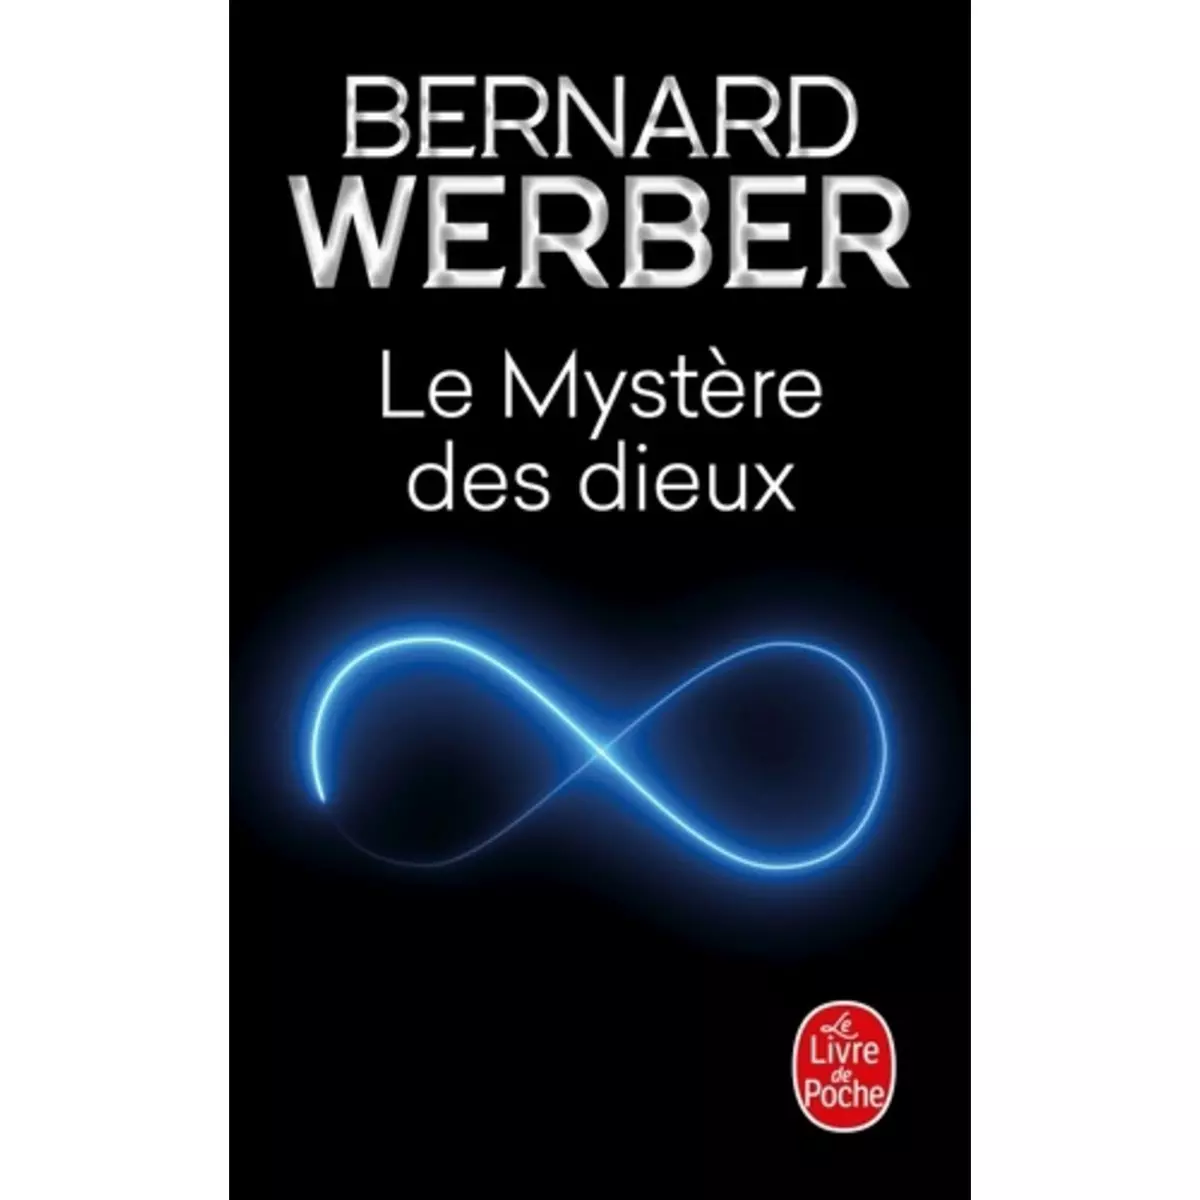  LE CYCLE DES DIEUX TOME 3 : LE MYSTERE DES DIEUX, Werber Bernard